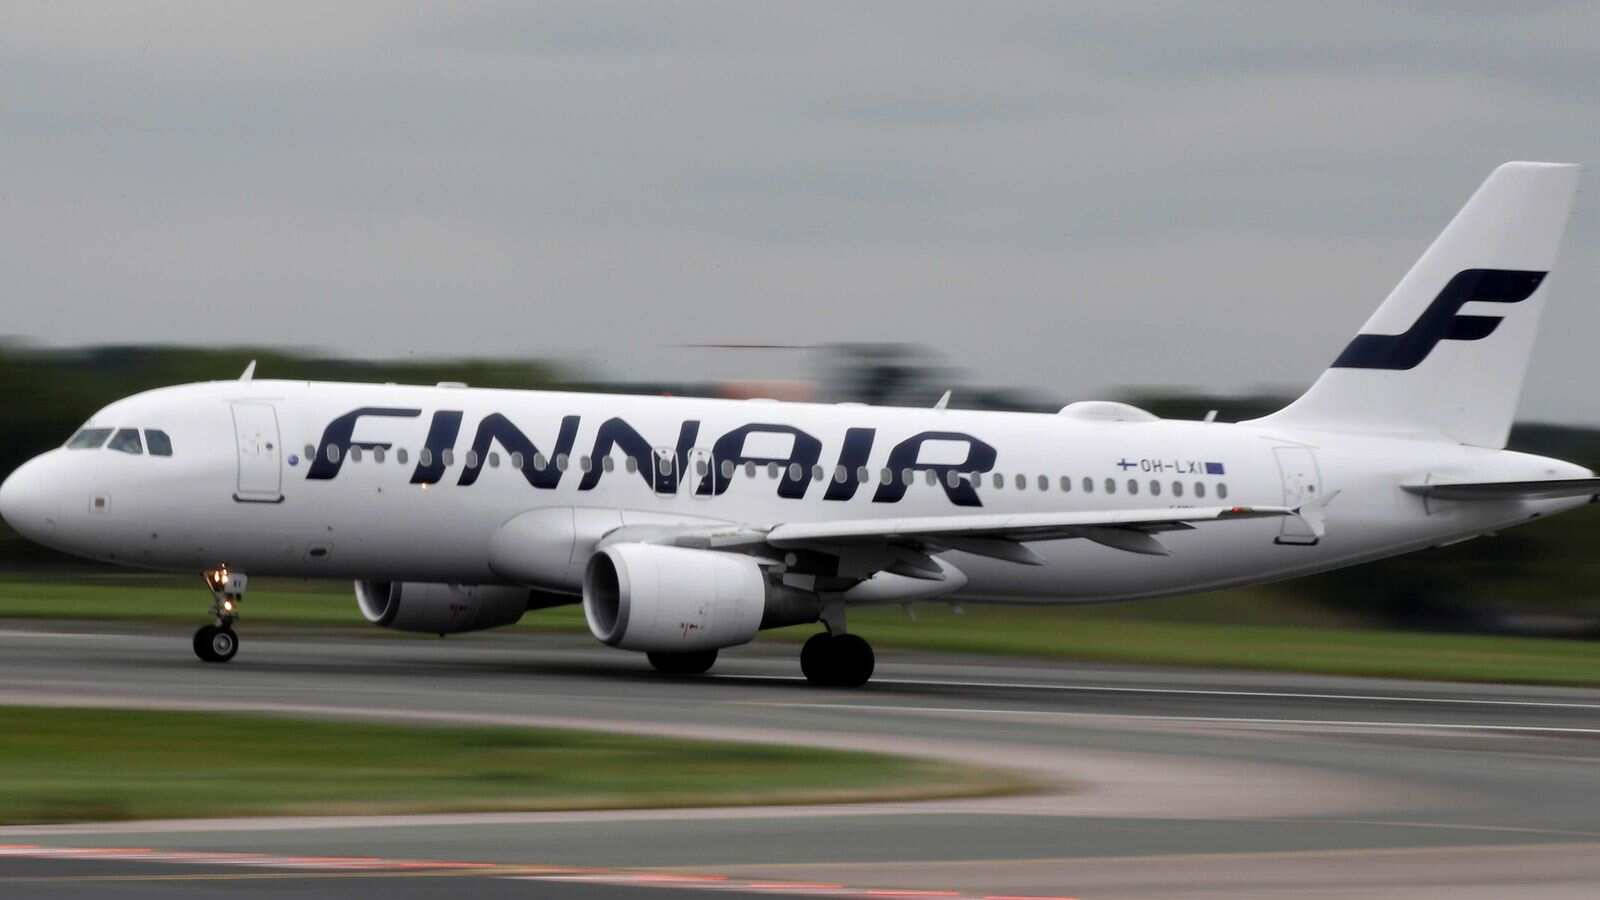 L'aereoimpeccabile Di Finnair Sulla Pista Di Decollo Sfondo